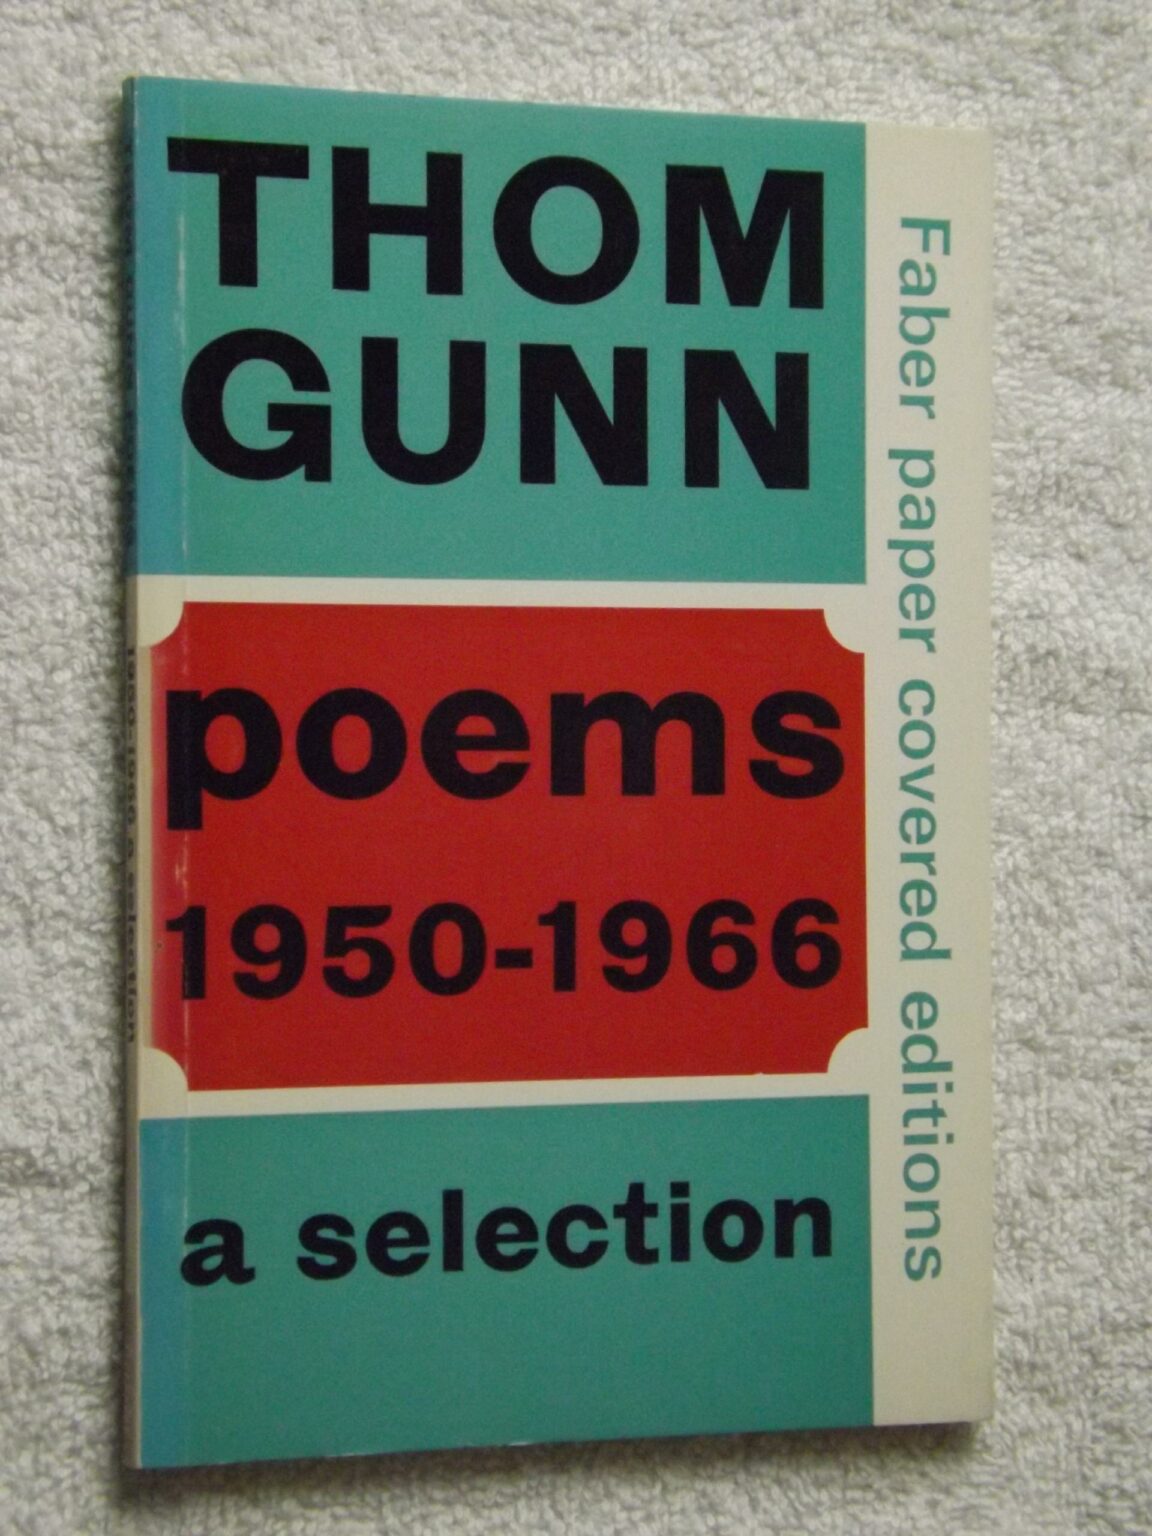 Thom Gunn Poems 1950 1966 A Selection Bbogdk Brugte Bøger Til Salg 